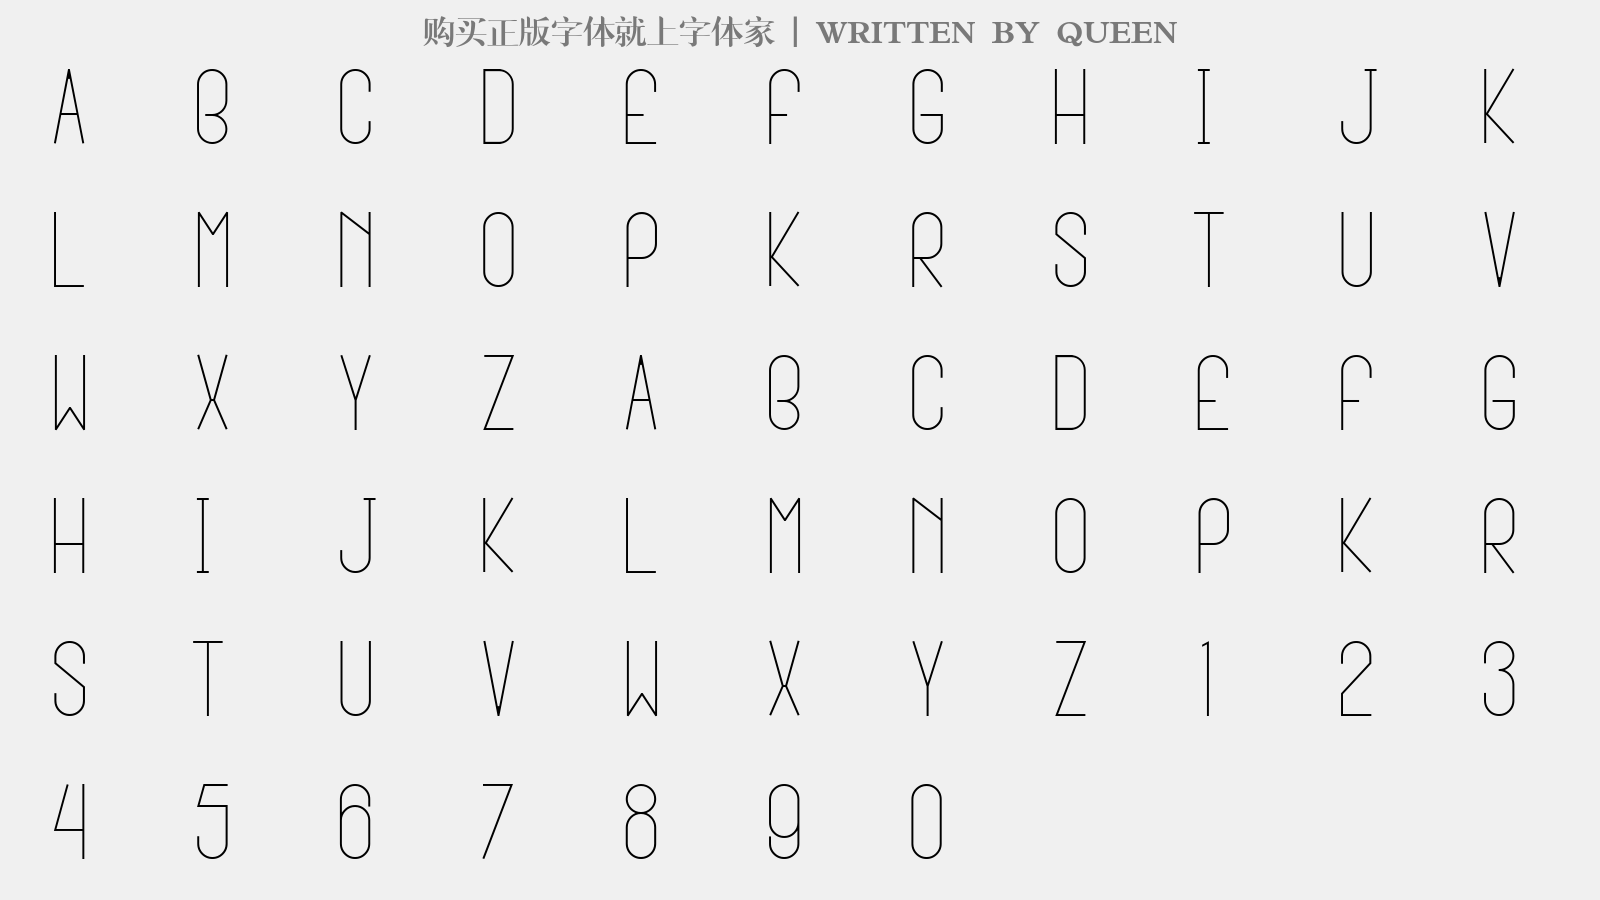 QUEEN - 大写字母/小写字母/数字